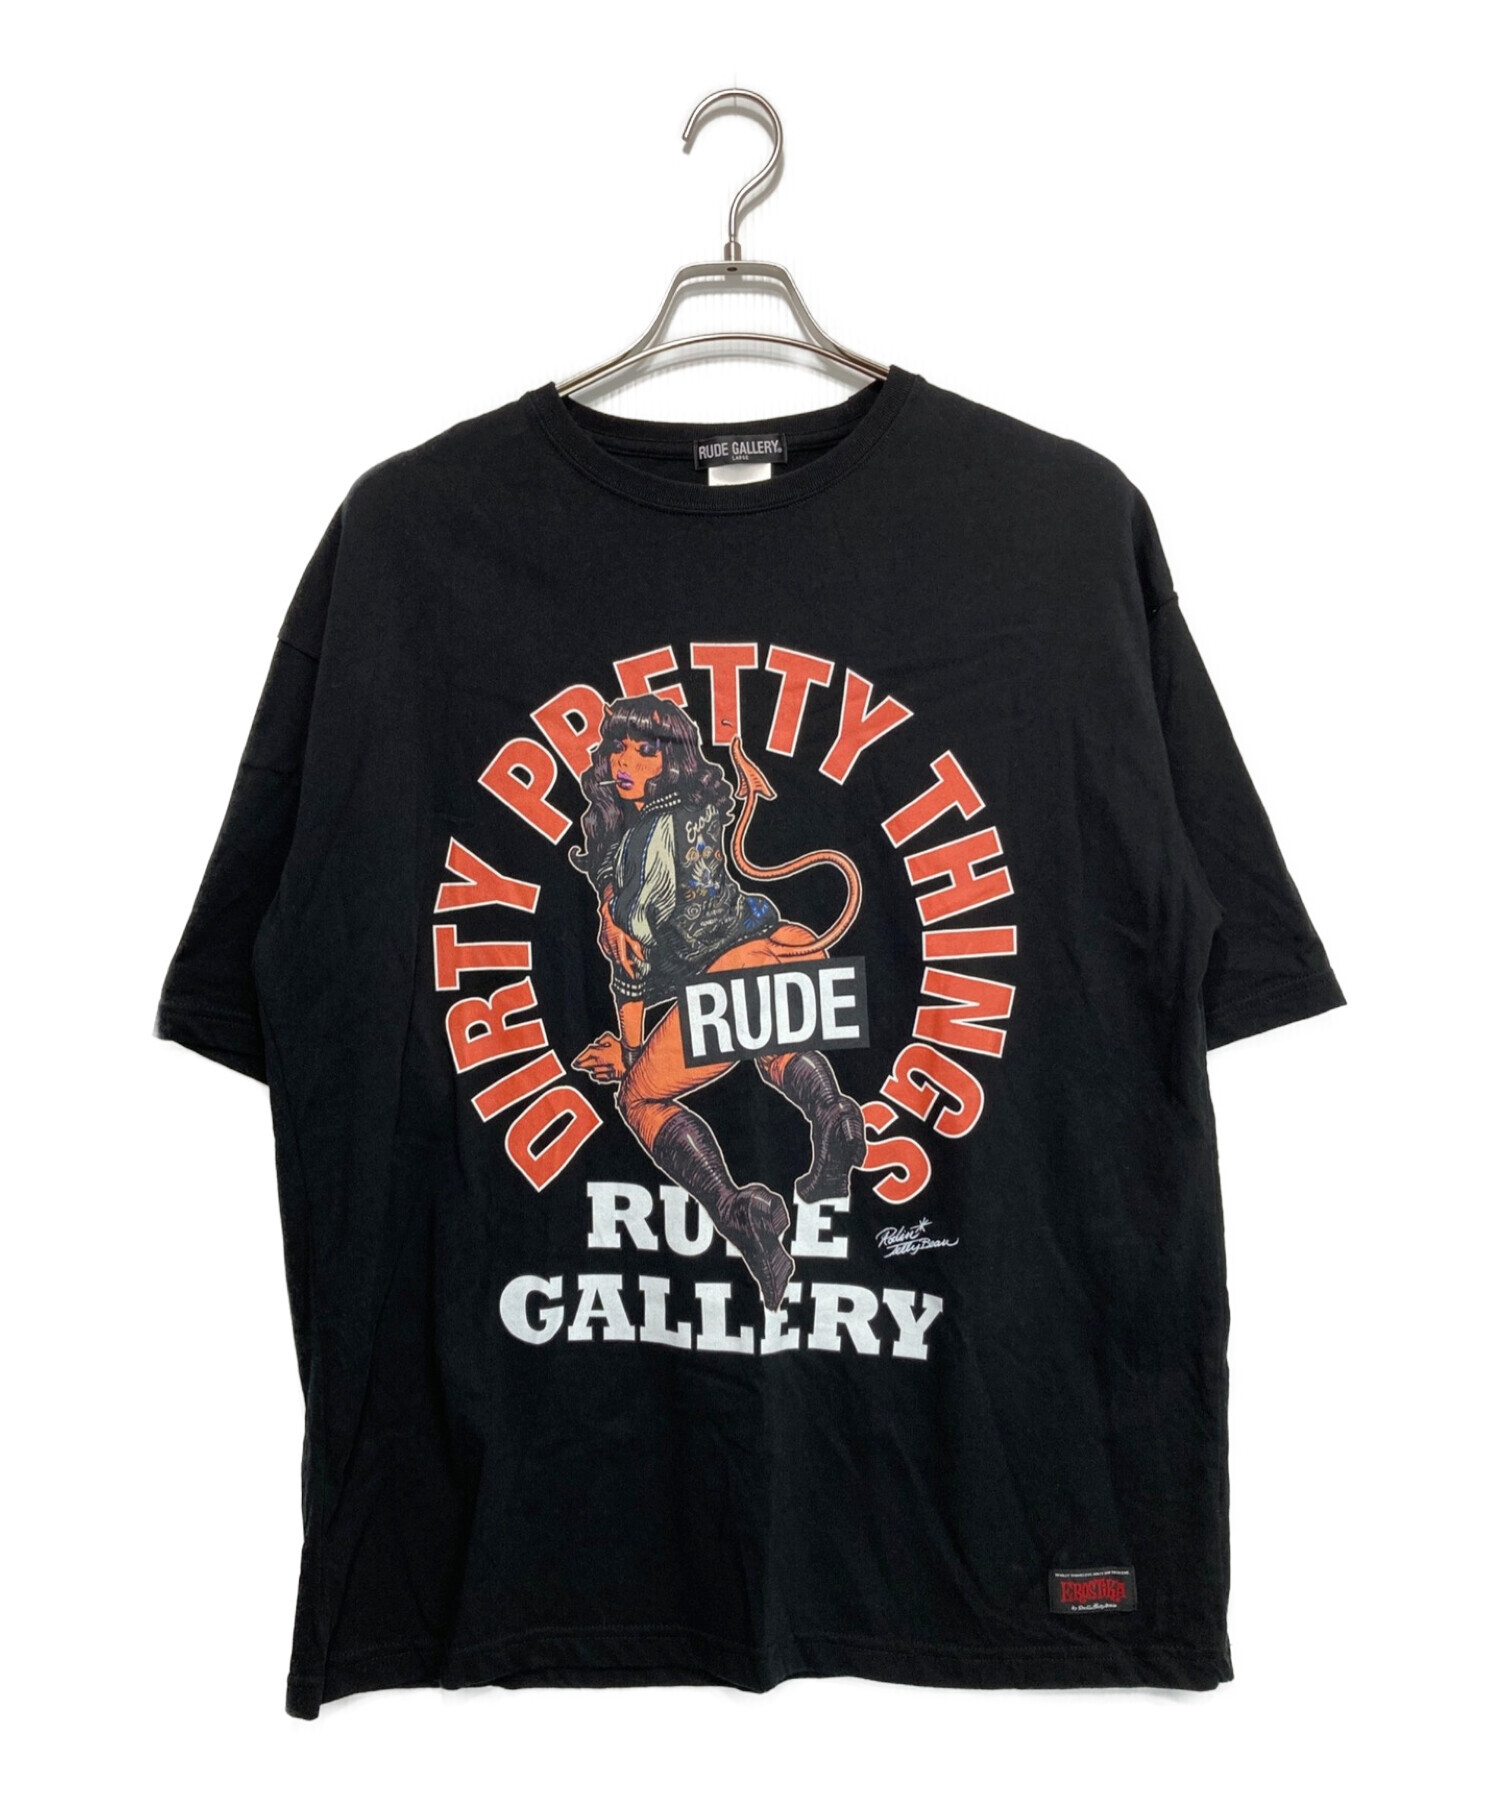 RUDE GALLERY (ルードギャラリー) Rockin' Jelly BeanプリントTシャツ ブラック サイズ:LARGE